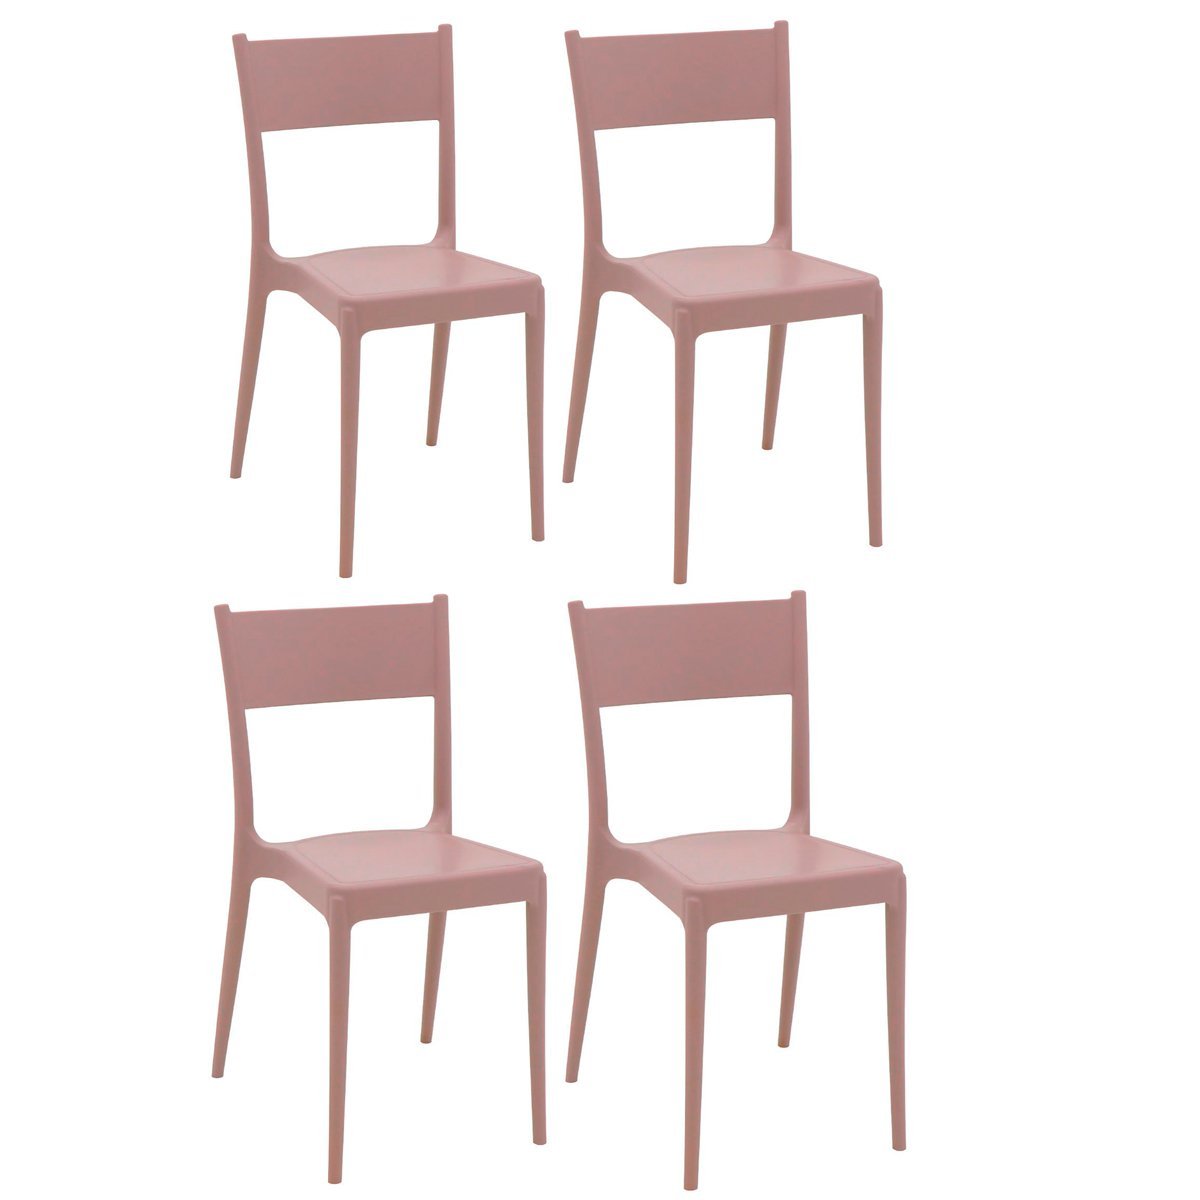 Conjunto 4 Cadeiras de Polipropileno e Fibra de Vidro Summa Eco Diana - Tramontina - Camurça 92030/4